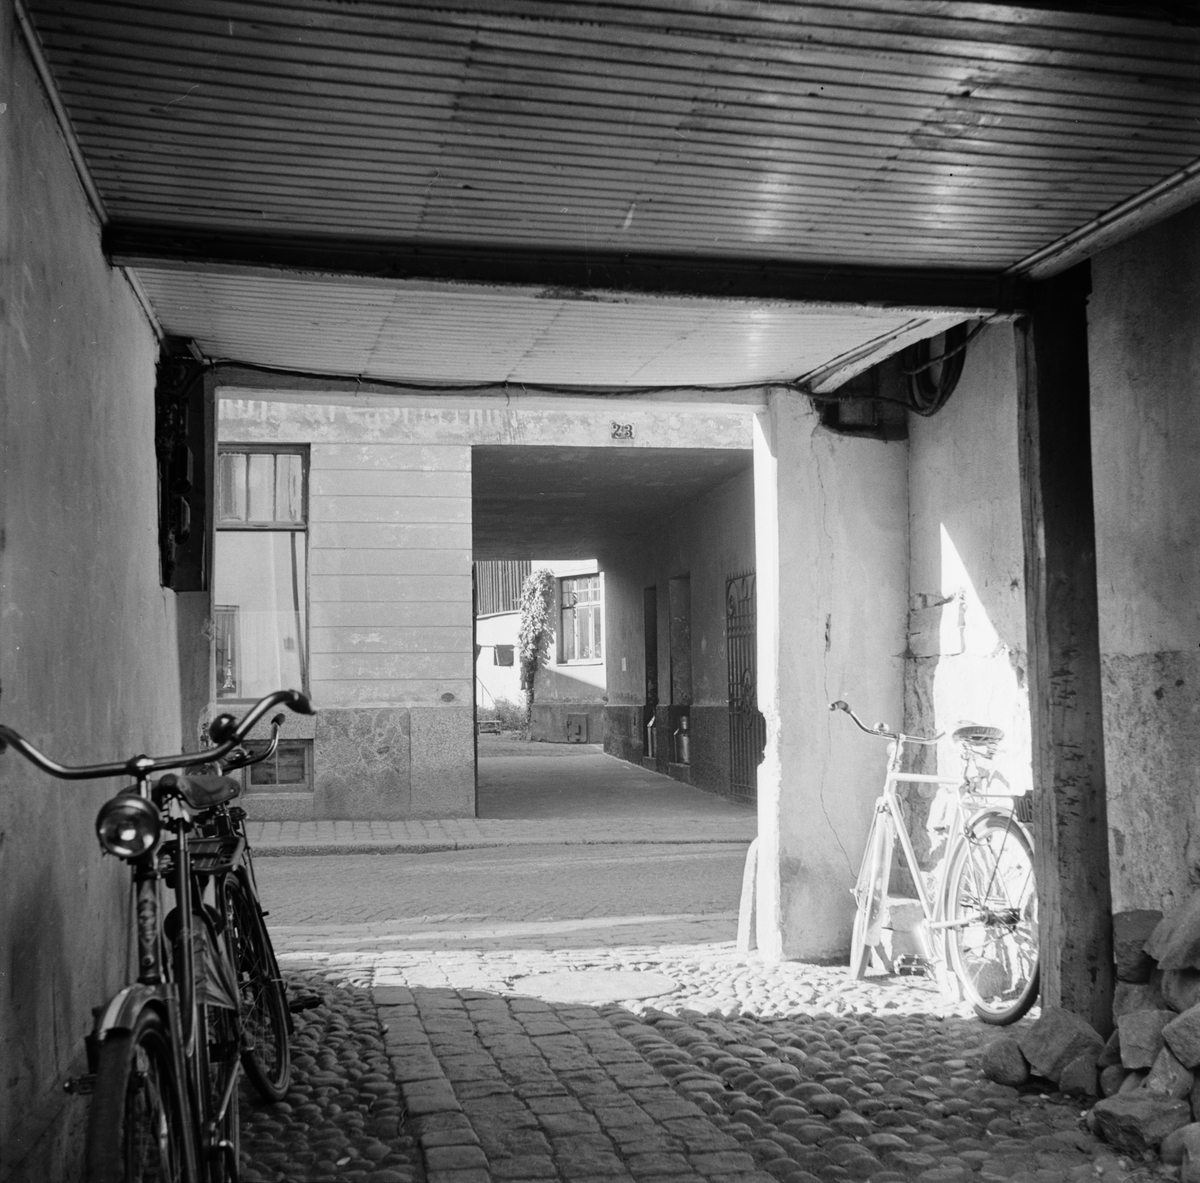 Uppsala över gården - porten till Dragarbrunnsgatan 26, kvarteret Svanen, Uppsala 1949